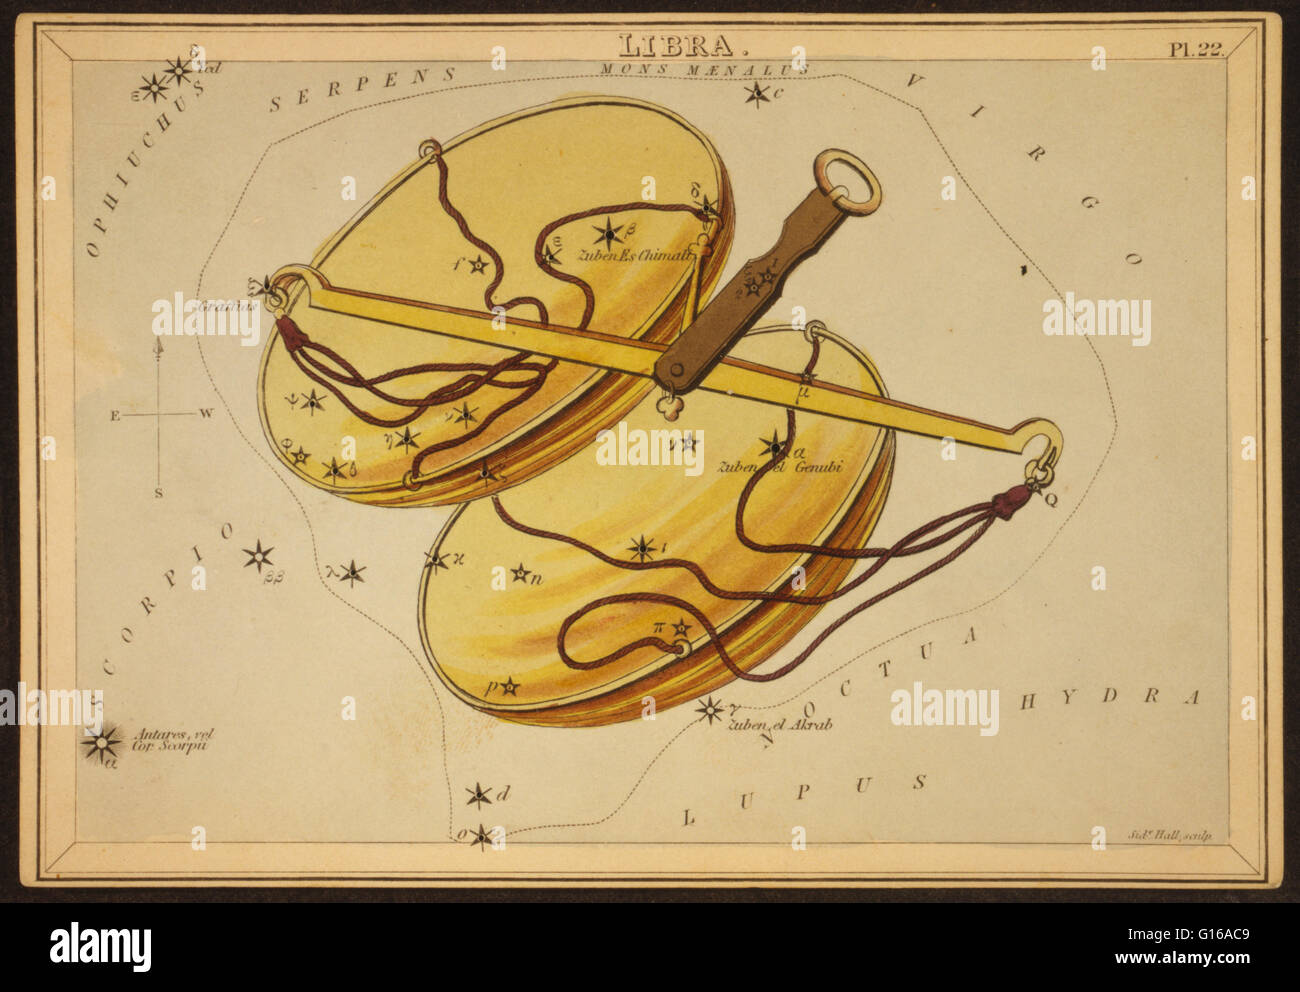 Astronomische Diagramm zeigt ein Gleichgewicht bilden die Konstellation. Libra Sternbild. Ptolemäus Star Catalogue, aus einer spätlateinischen Version des Almagest, 1490. Die Waage ist ein Sternbild des Tierkreises. Sein Name ist lateinisch für Waagen. Es ist eines der Stockfoto